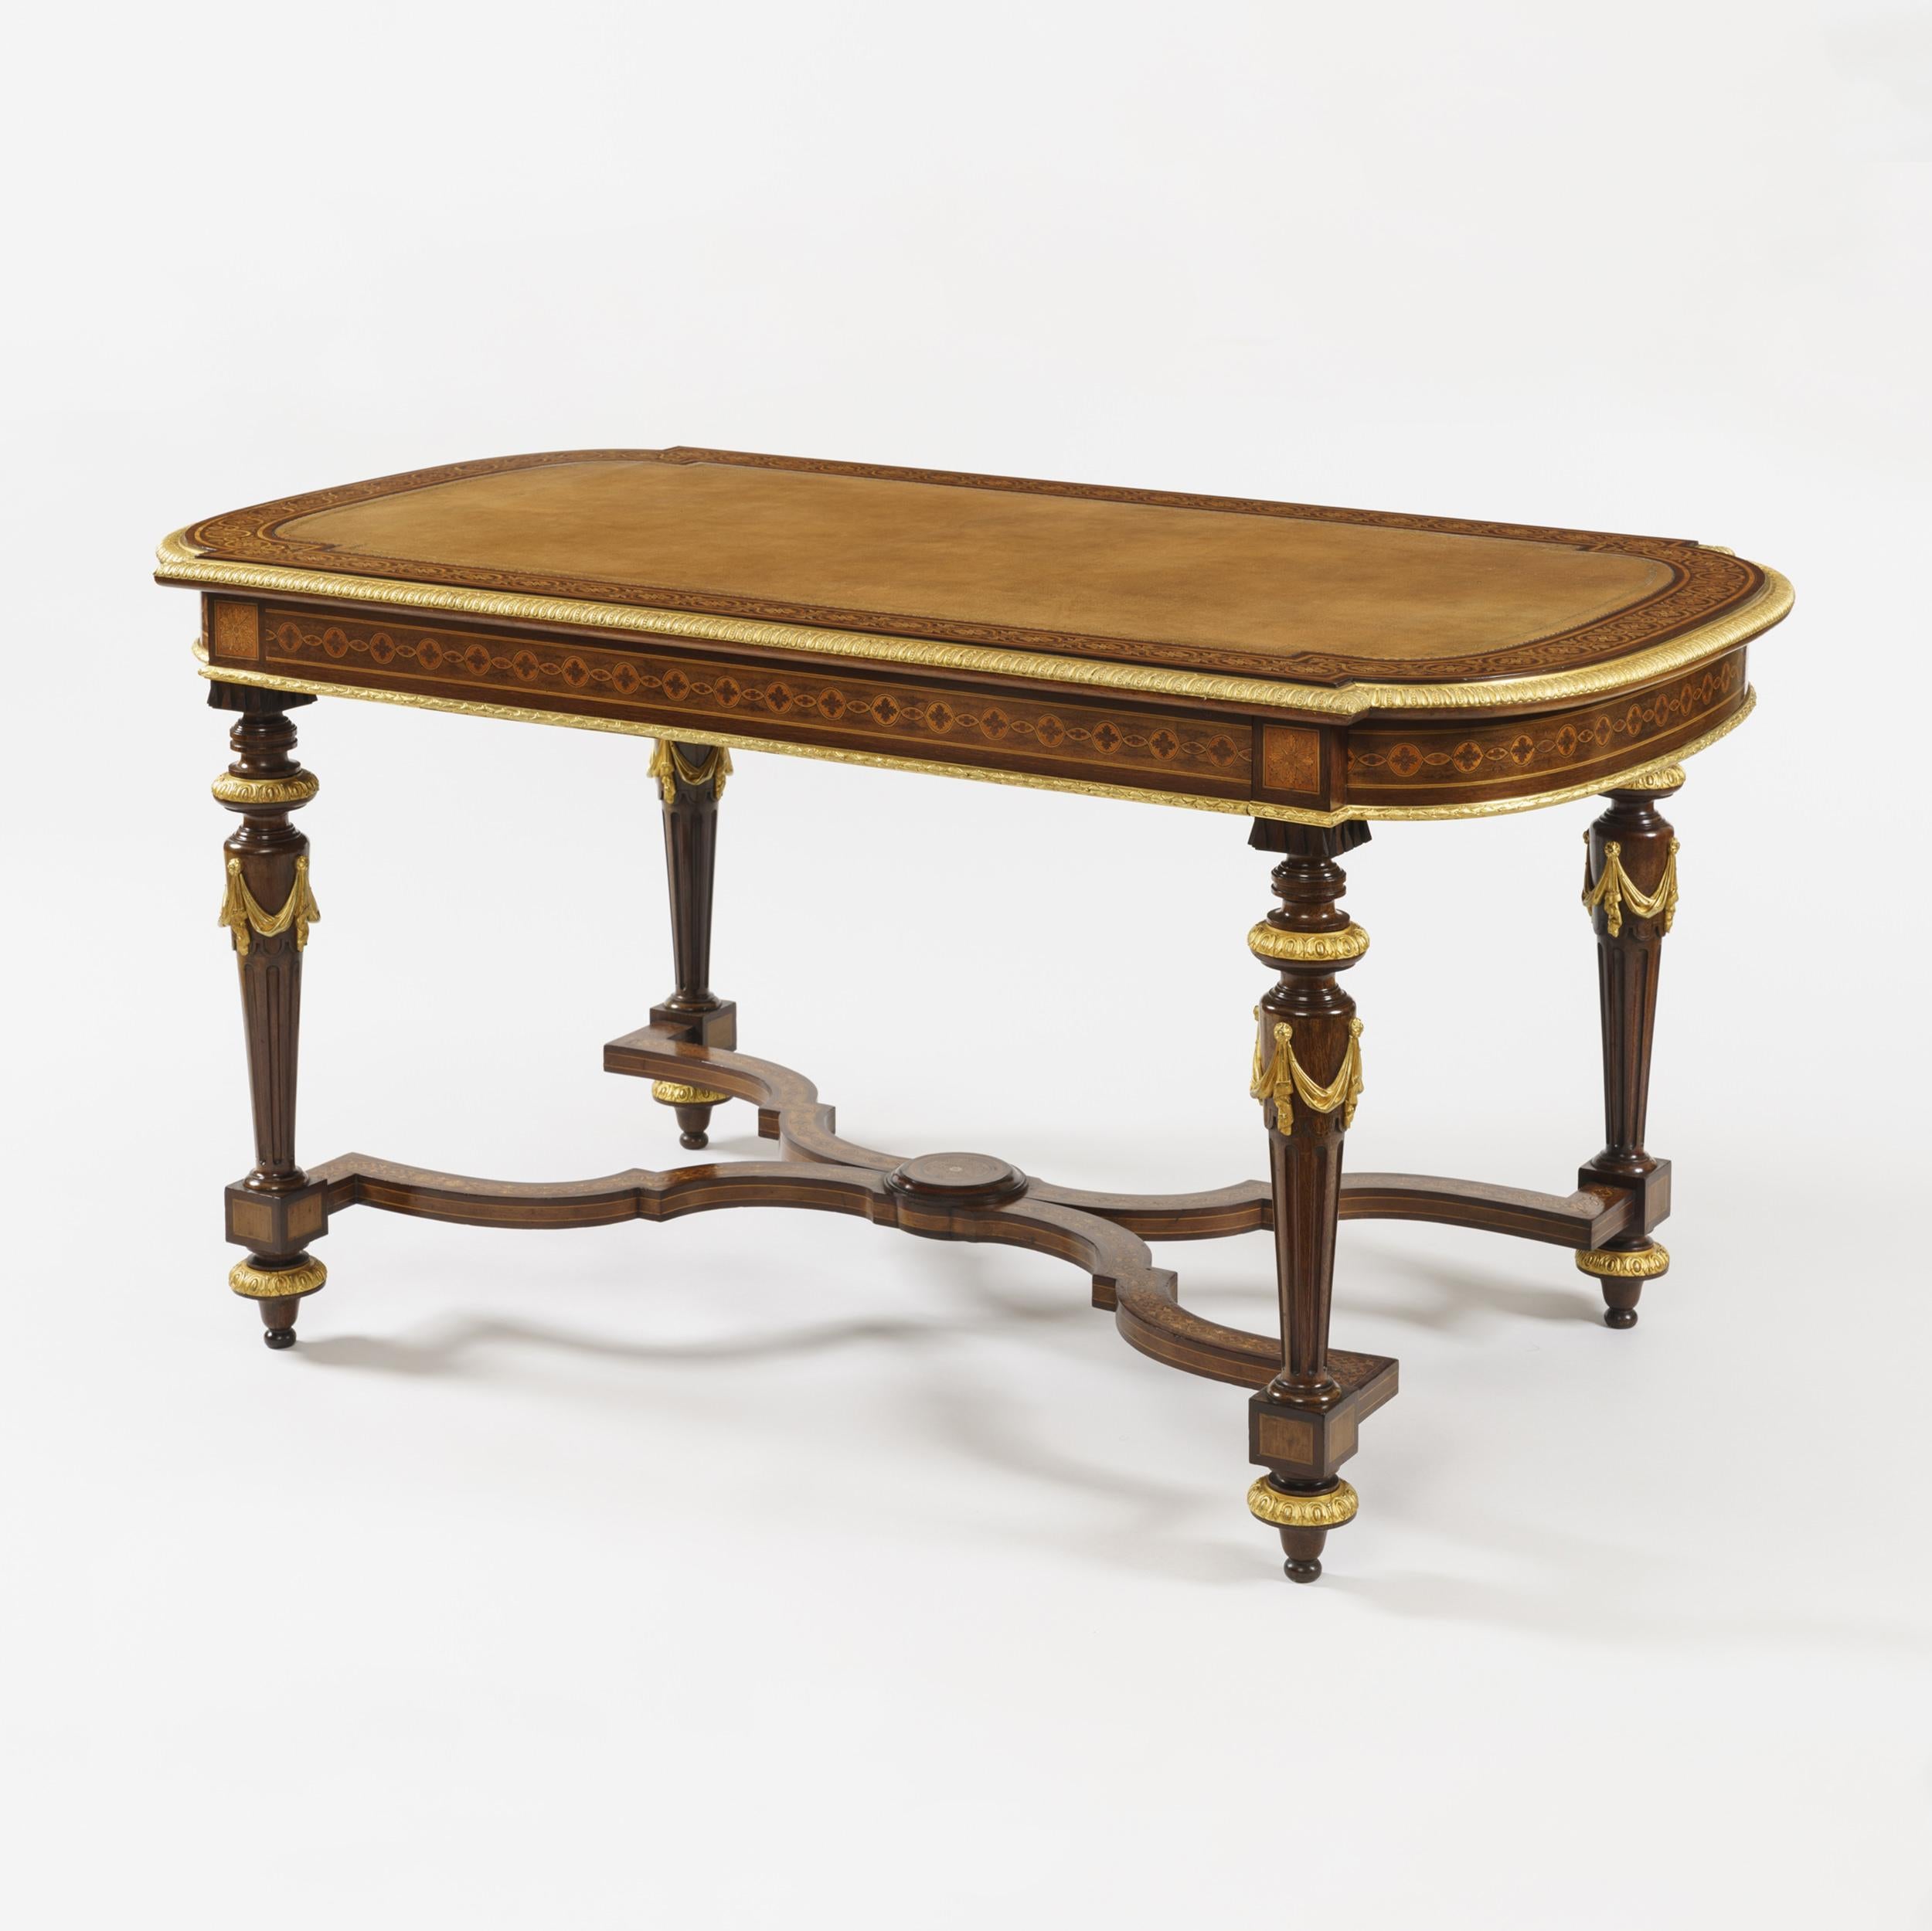 Une bonne table à écrire à la manière de Holland & Sons

Construit en acajou, avec des incrustations de bois et des montures en bronze doré ; de forme rectangulaire, avec des extrémités arquées, reposant sur des pieds tournés en anneau, cannelés et